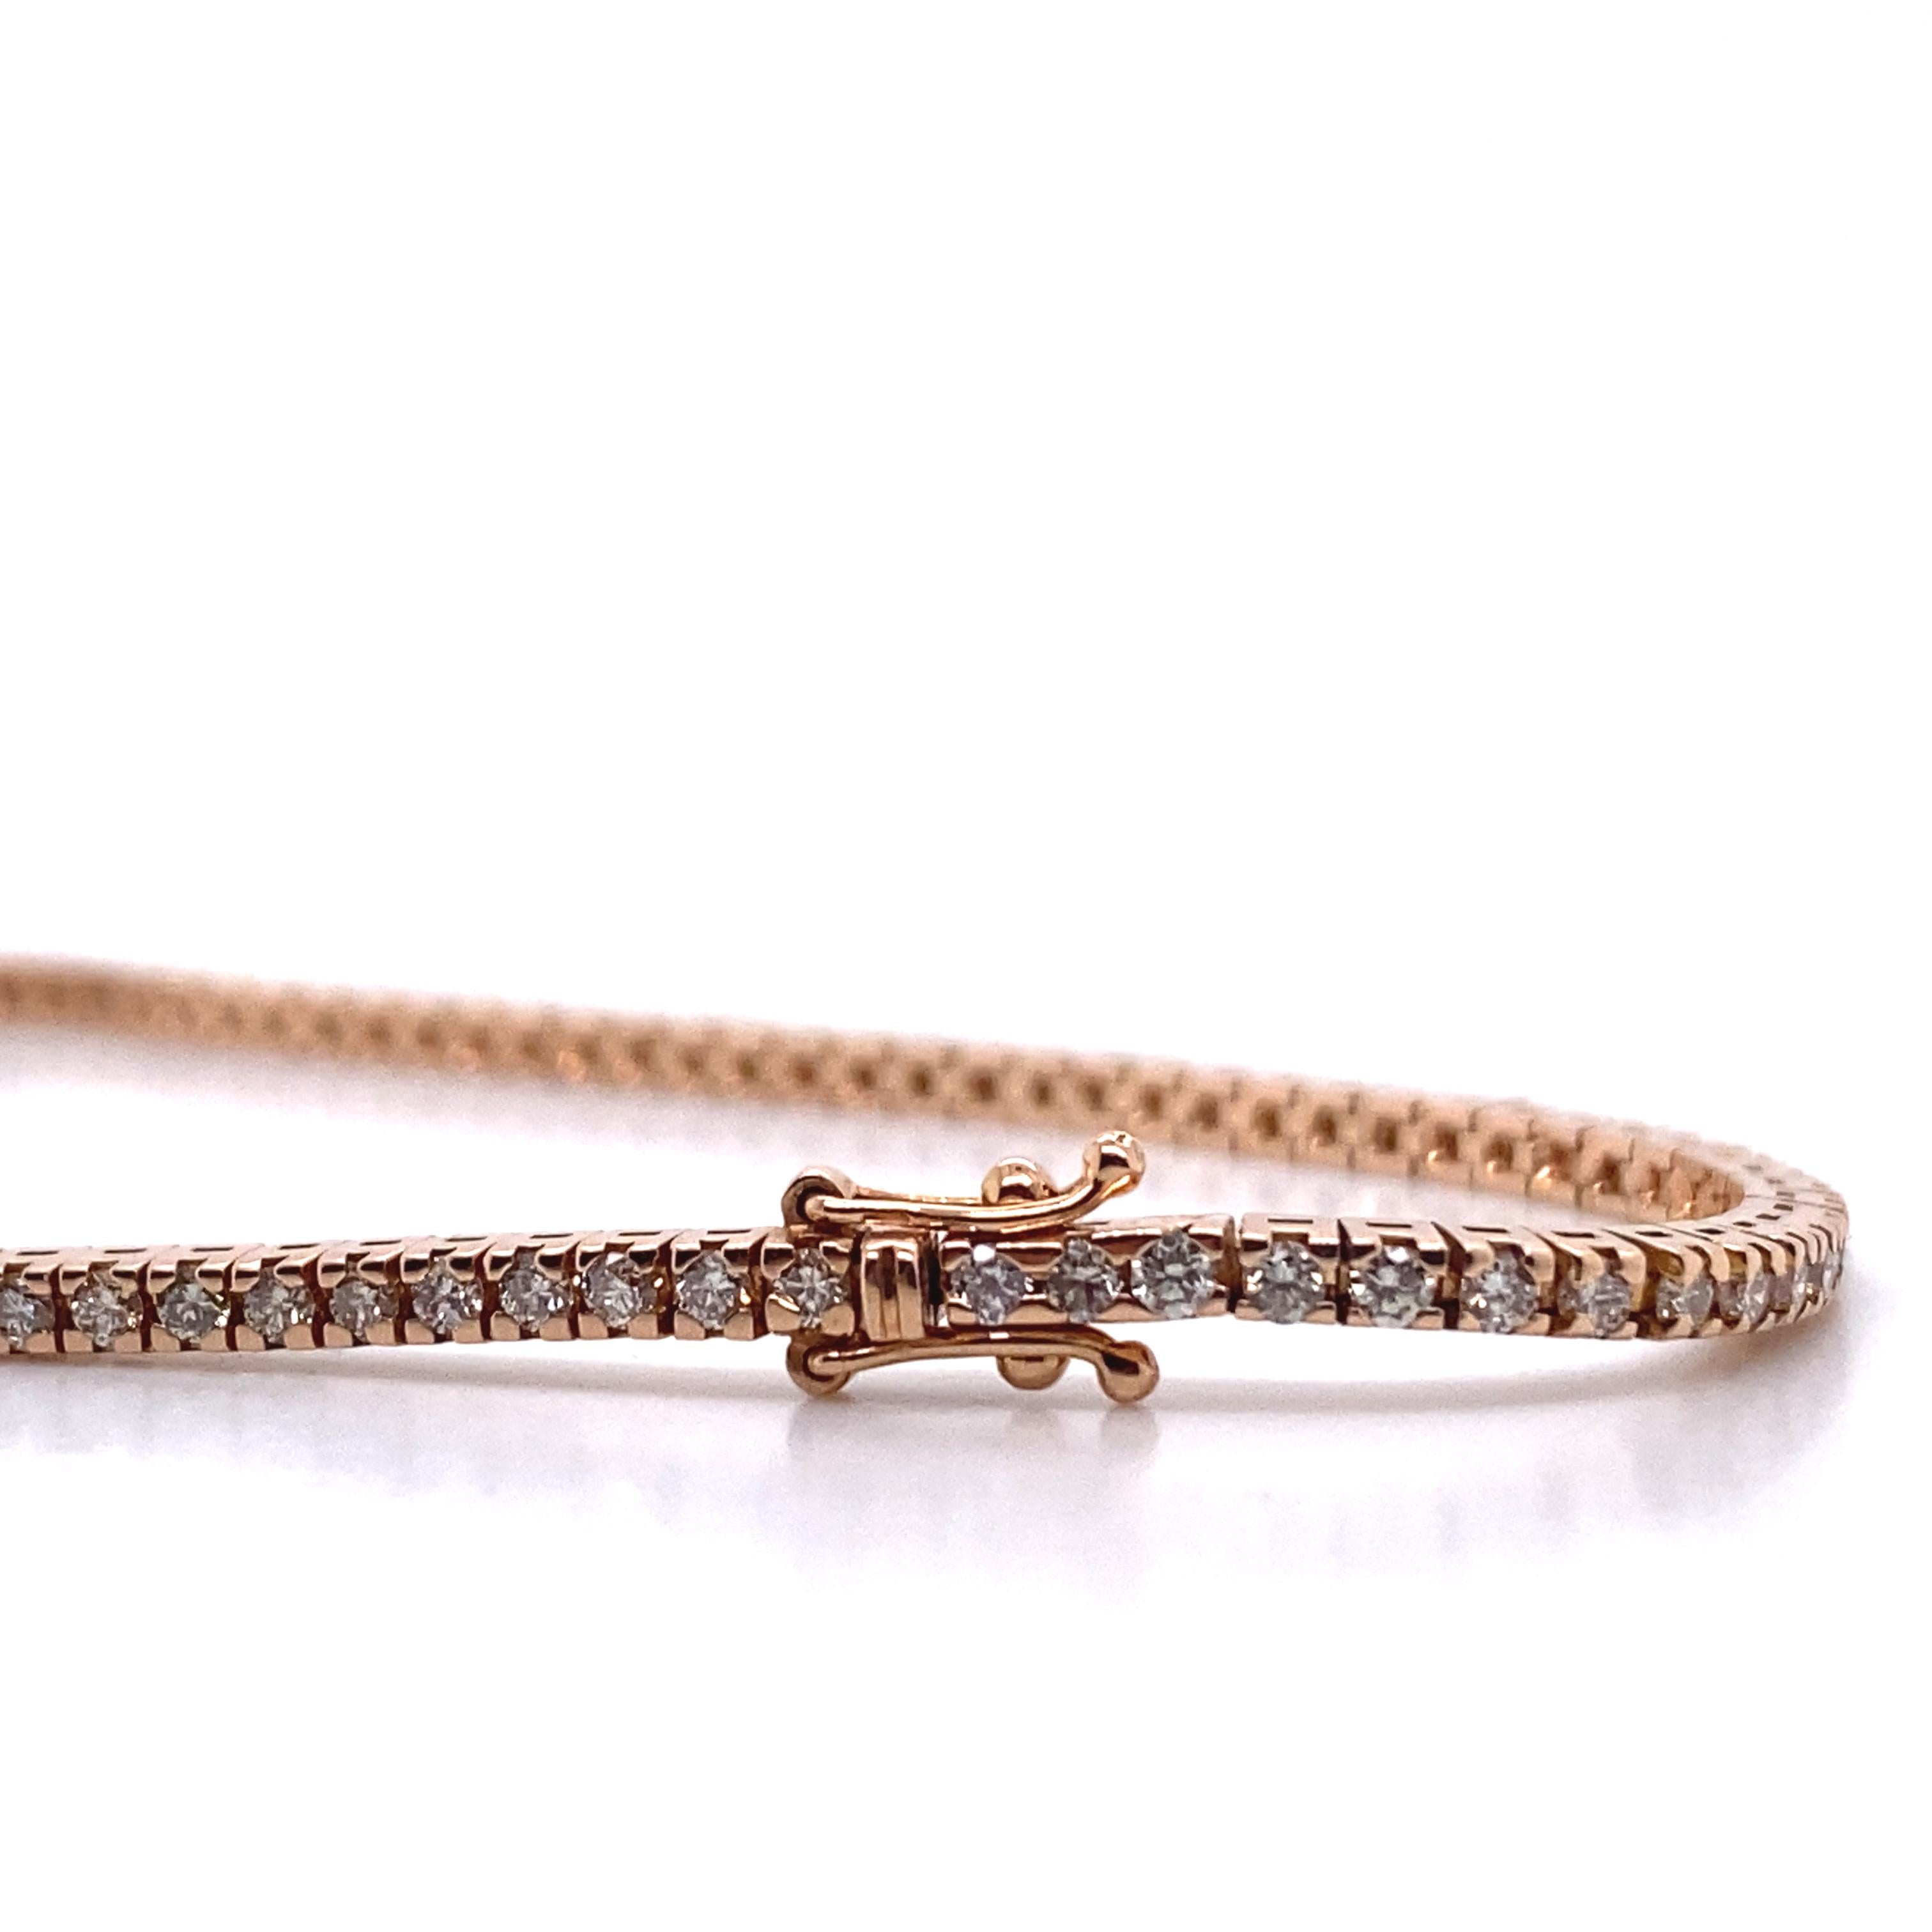 Sobre et élégant, ce bracelet de tennis est orné de 1,4 carats de diamants G VS sertis dans un superbe or rose 18 carats ; il mesure 18 cm de long. Il a été fabriqué à la main selon des méthodes traditionnelles et conçu et produit à Palerme, en